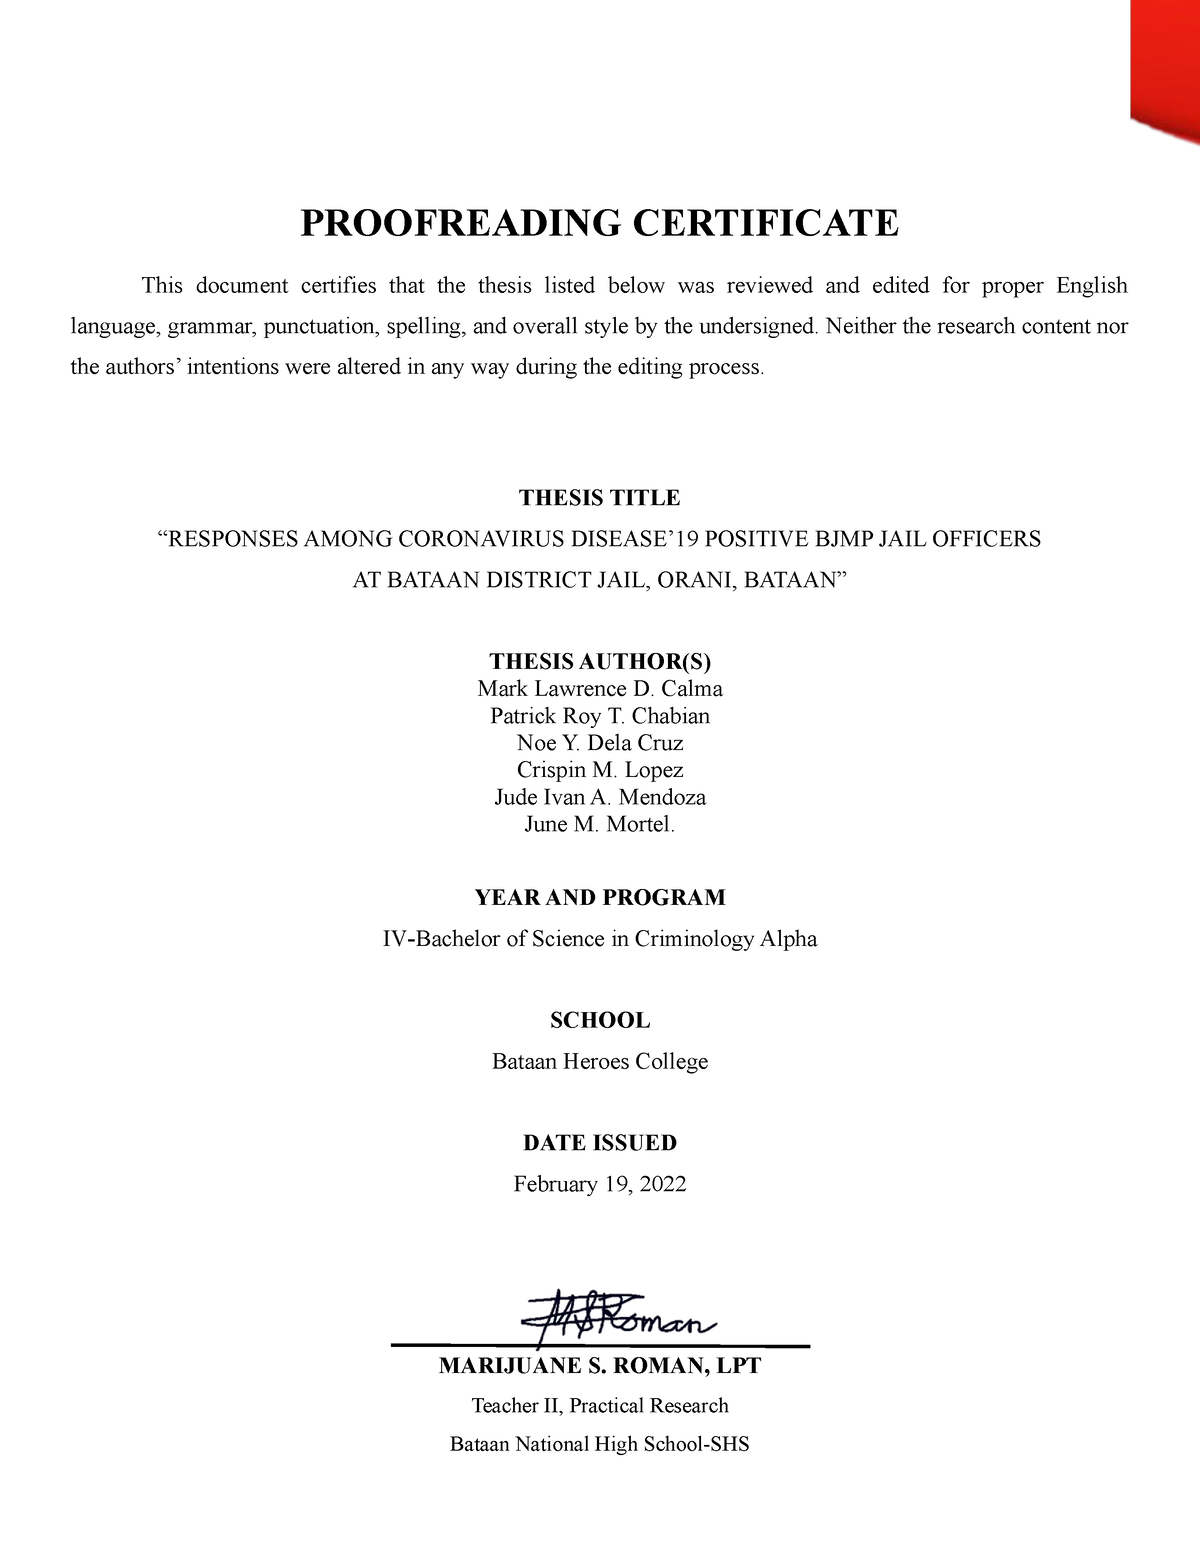 Proofreading Certificate Education StuDocu